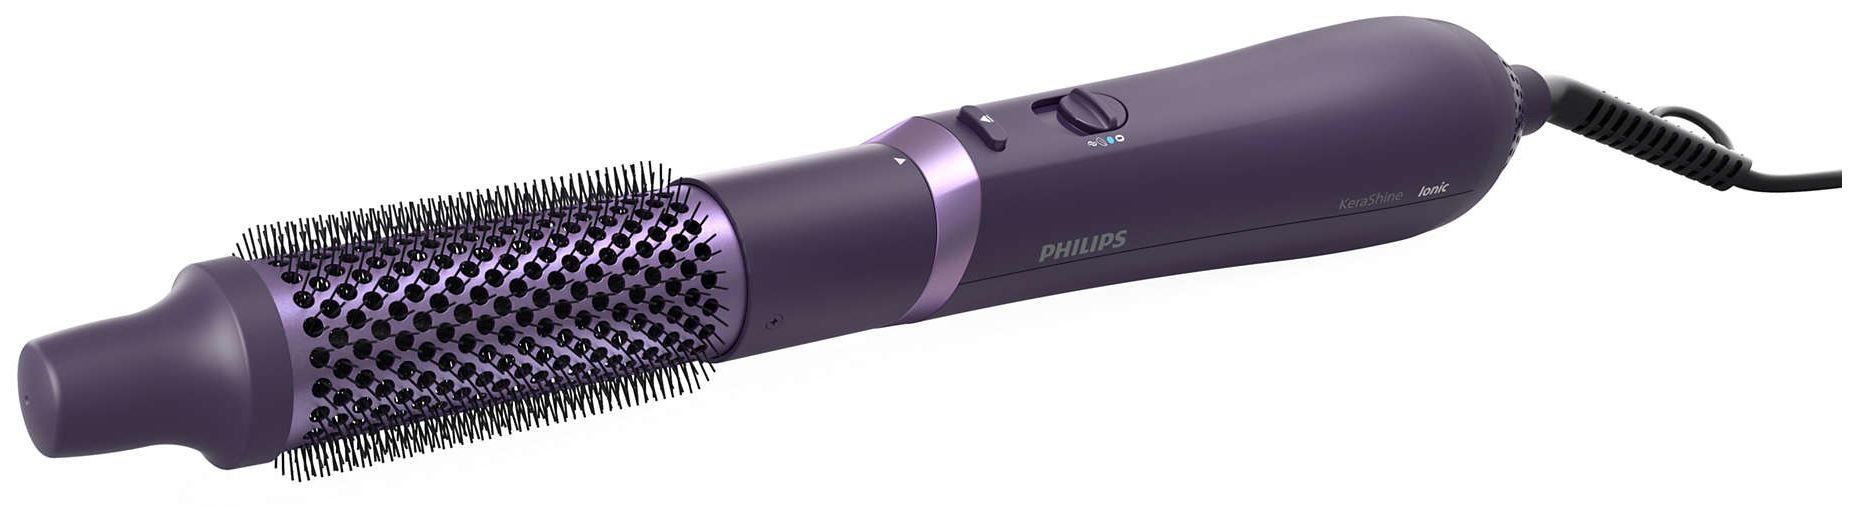 Philips BHA305/00 3000 800 series (Violett) Technomarkt von Multistyler expert W